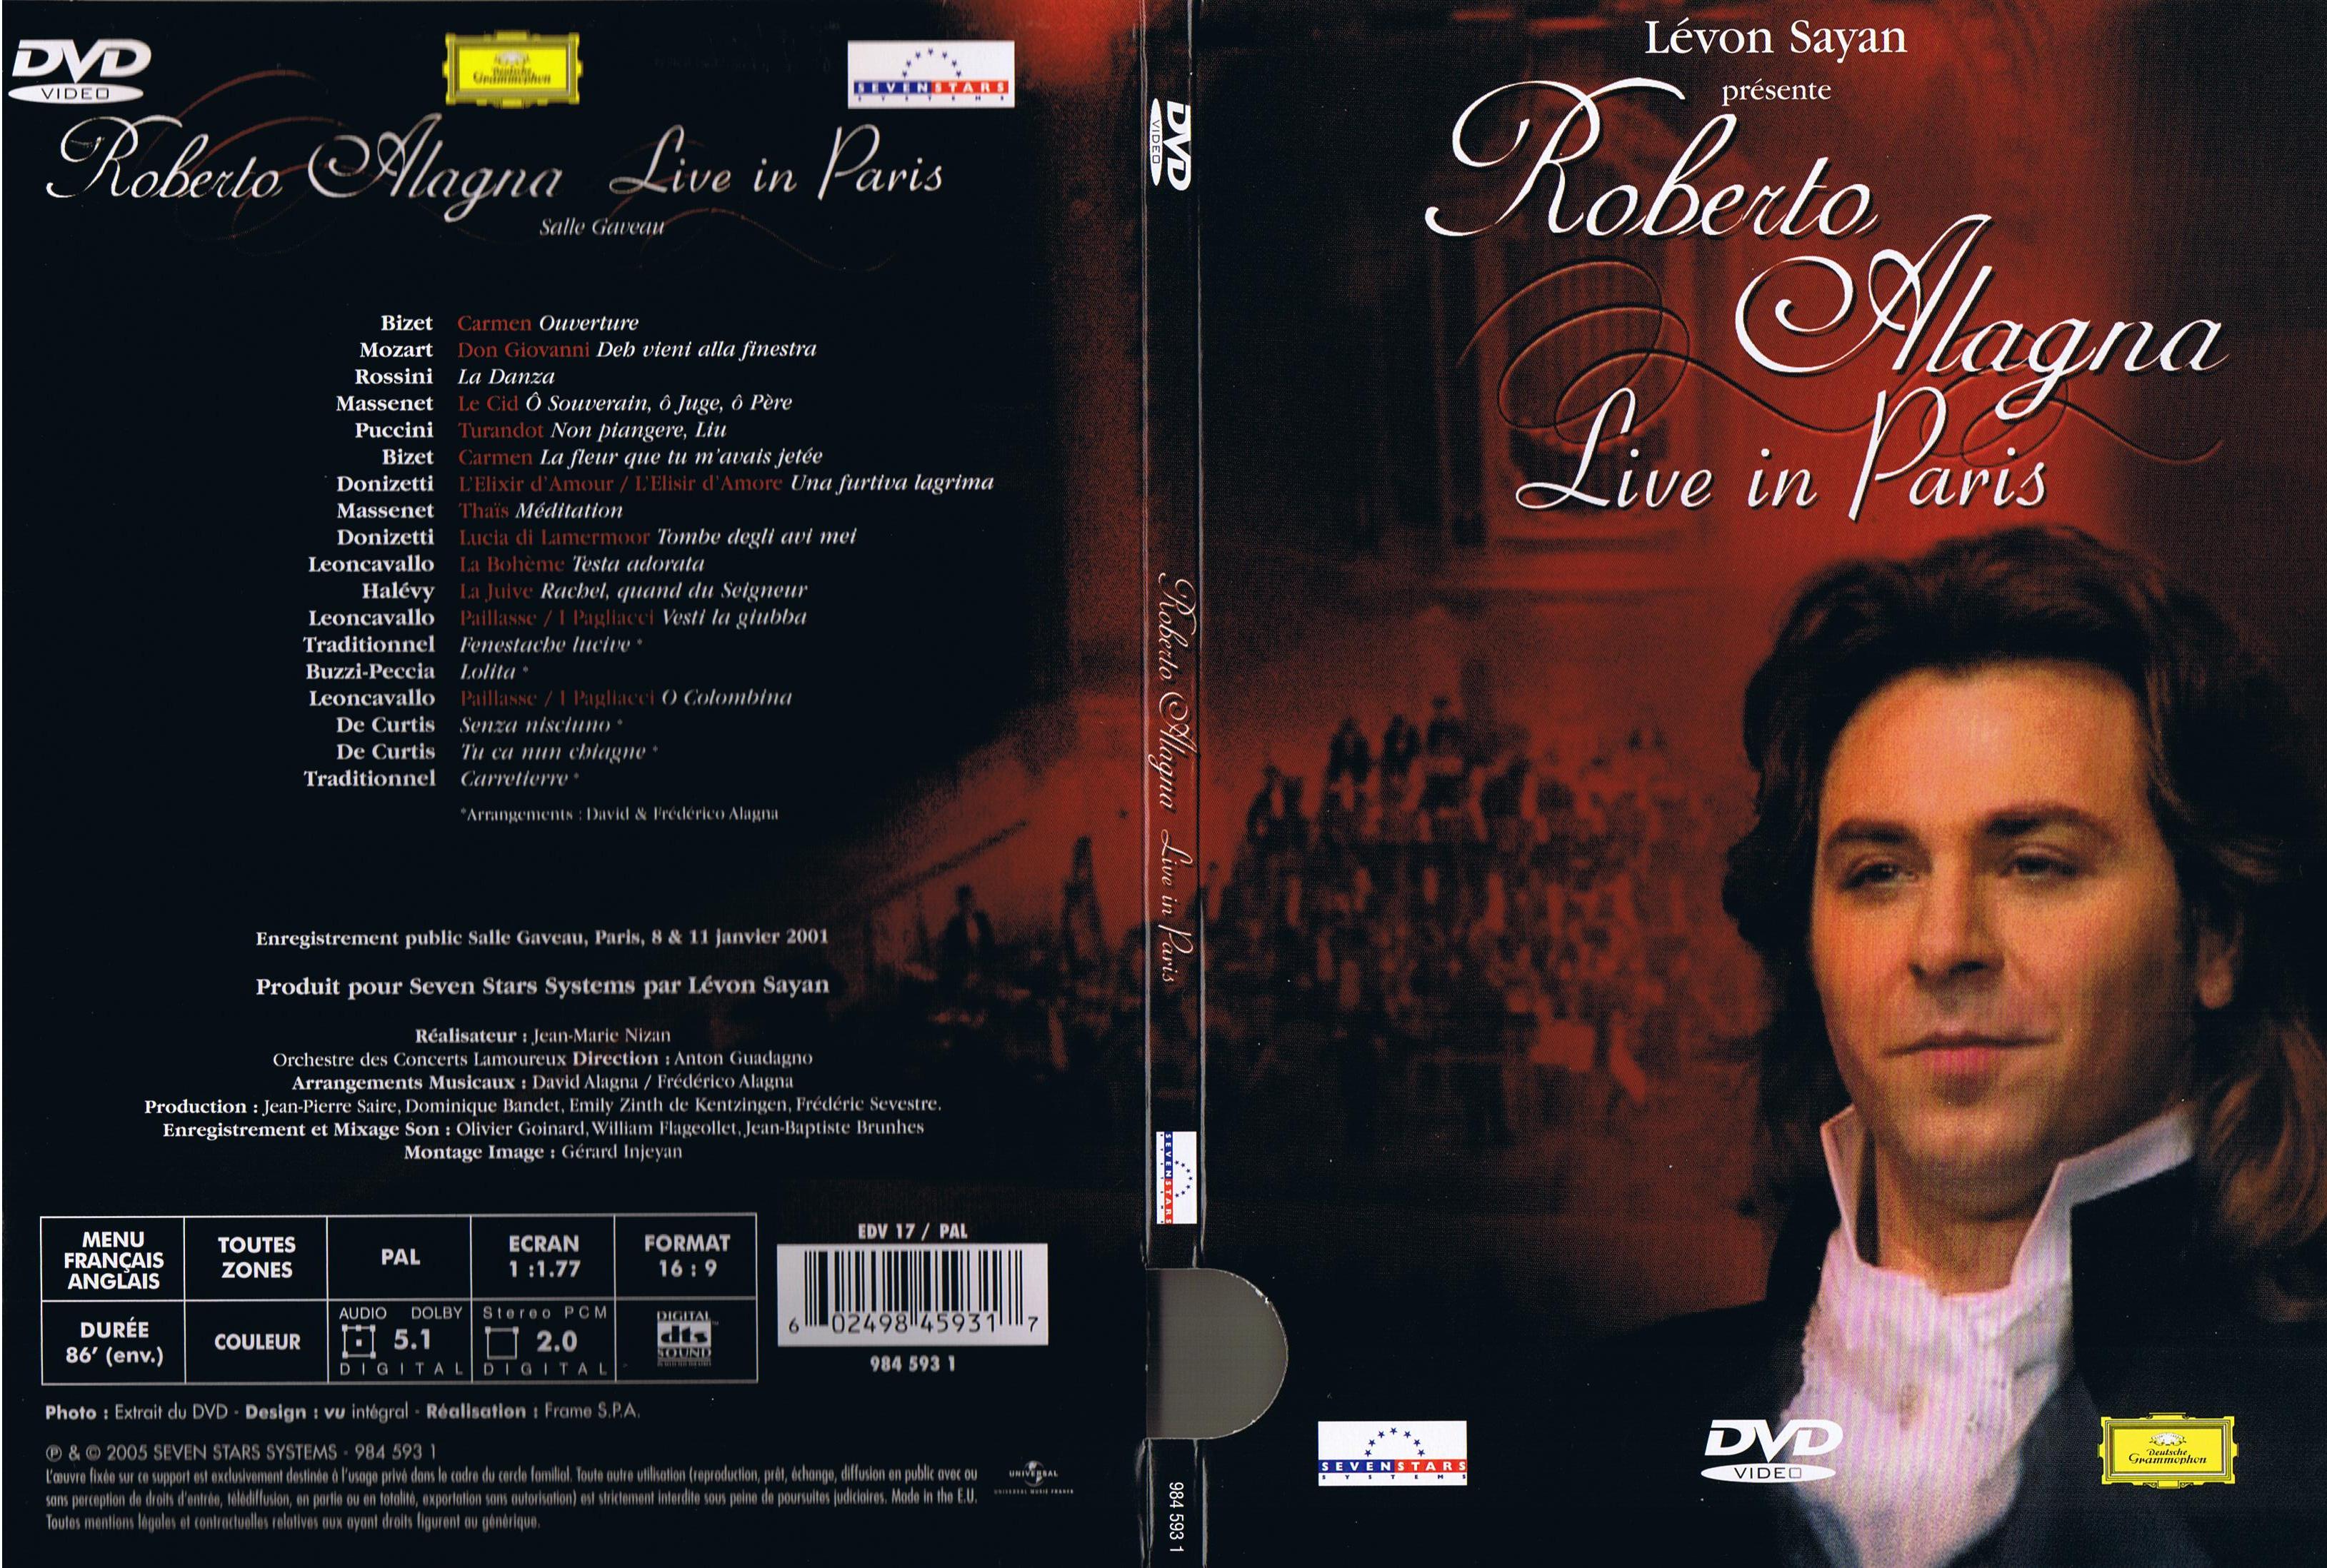 Jaquette DVD Roberto Alagna - Live in paris